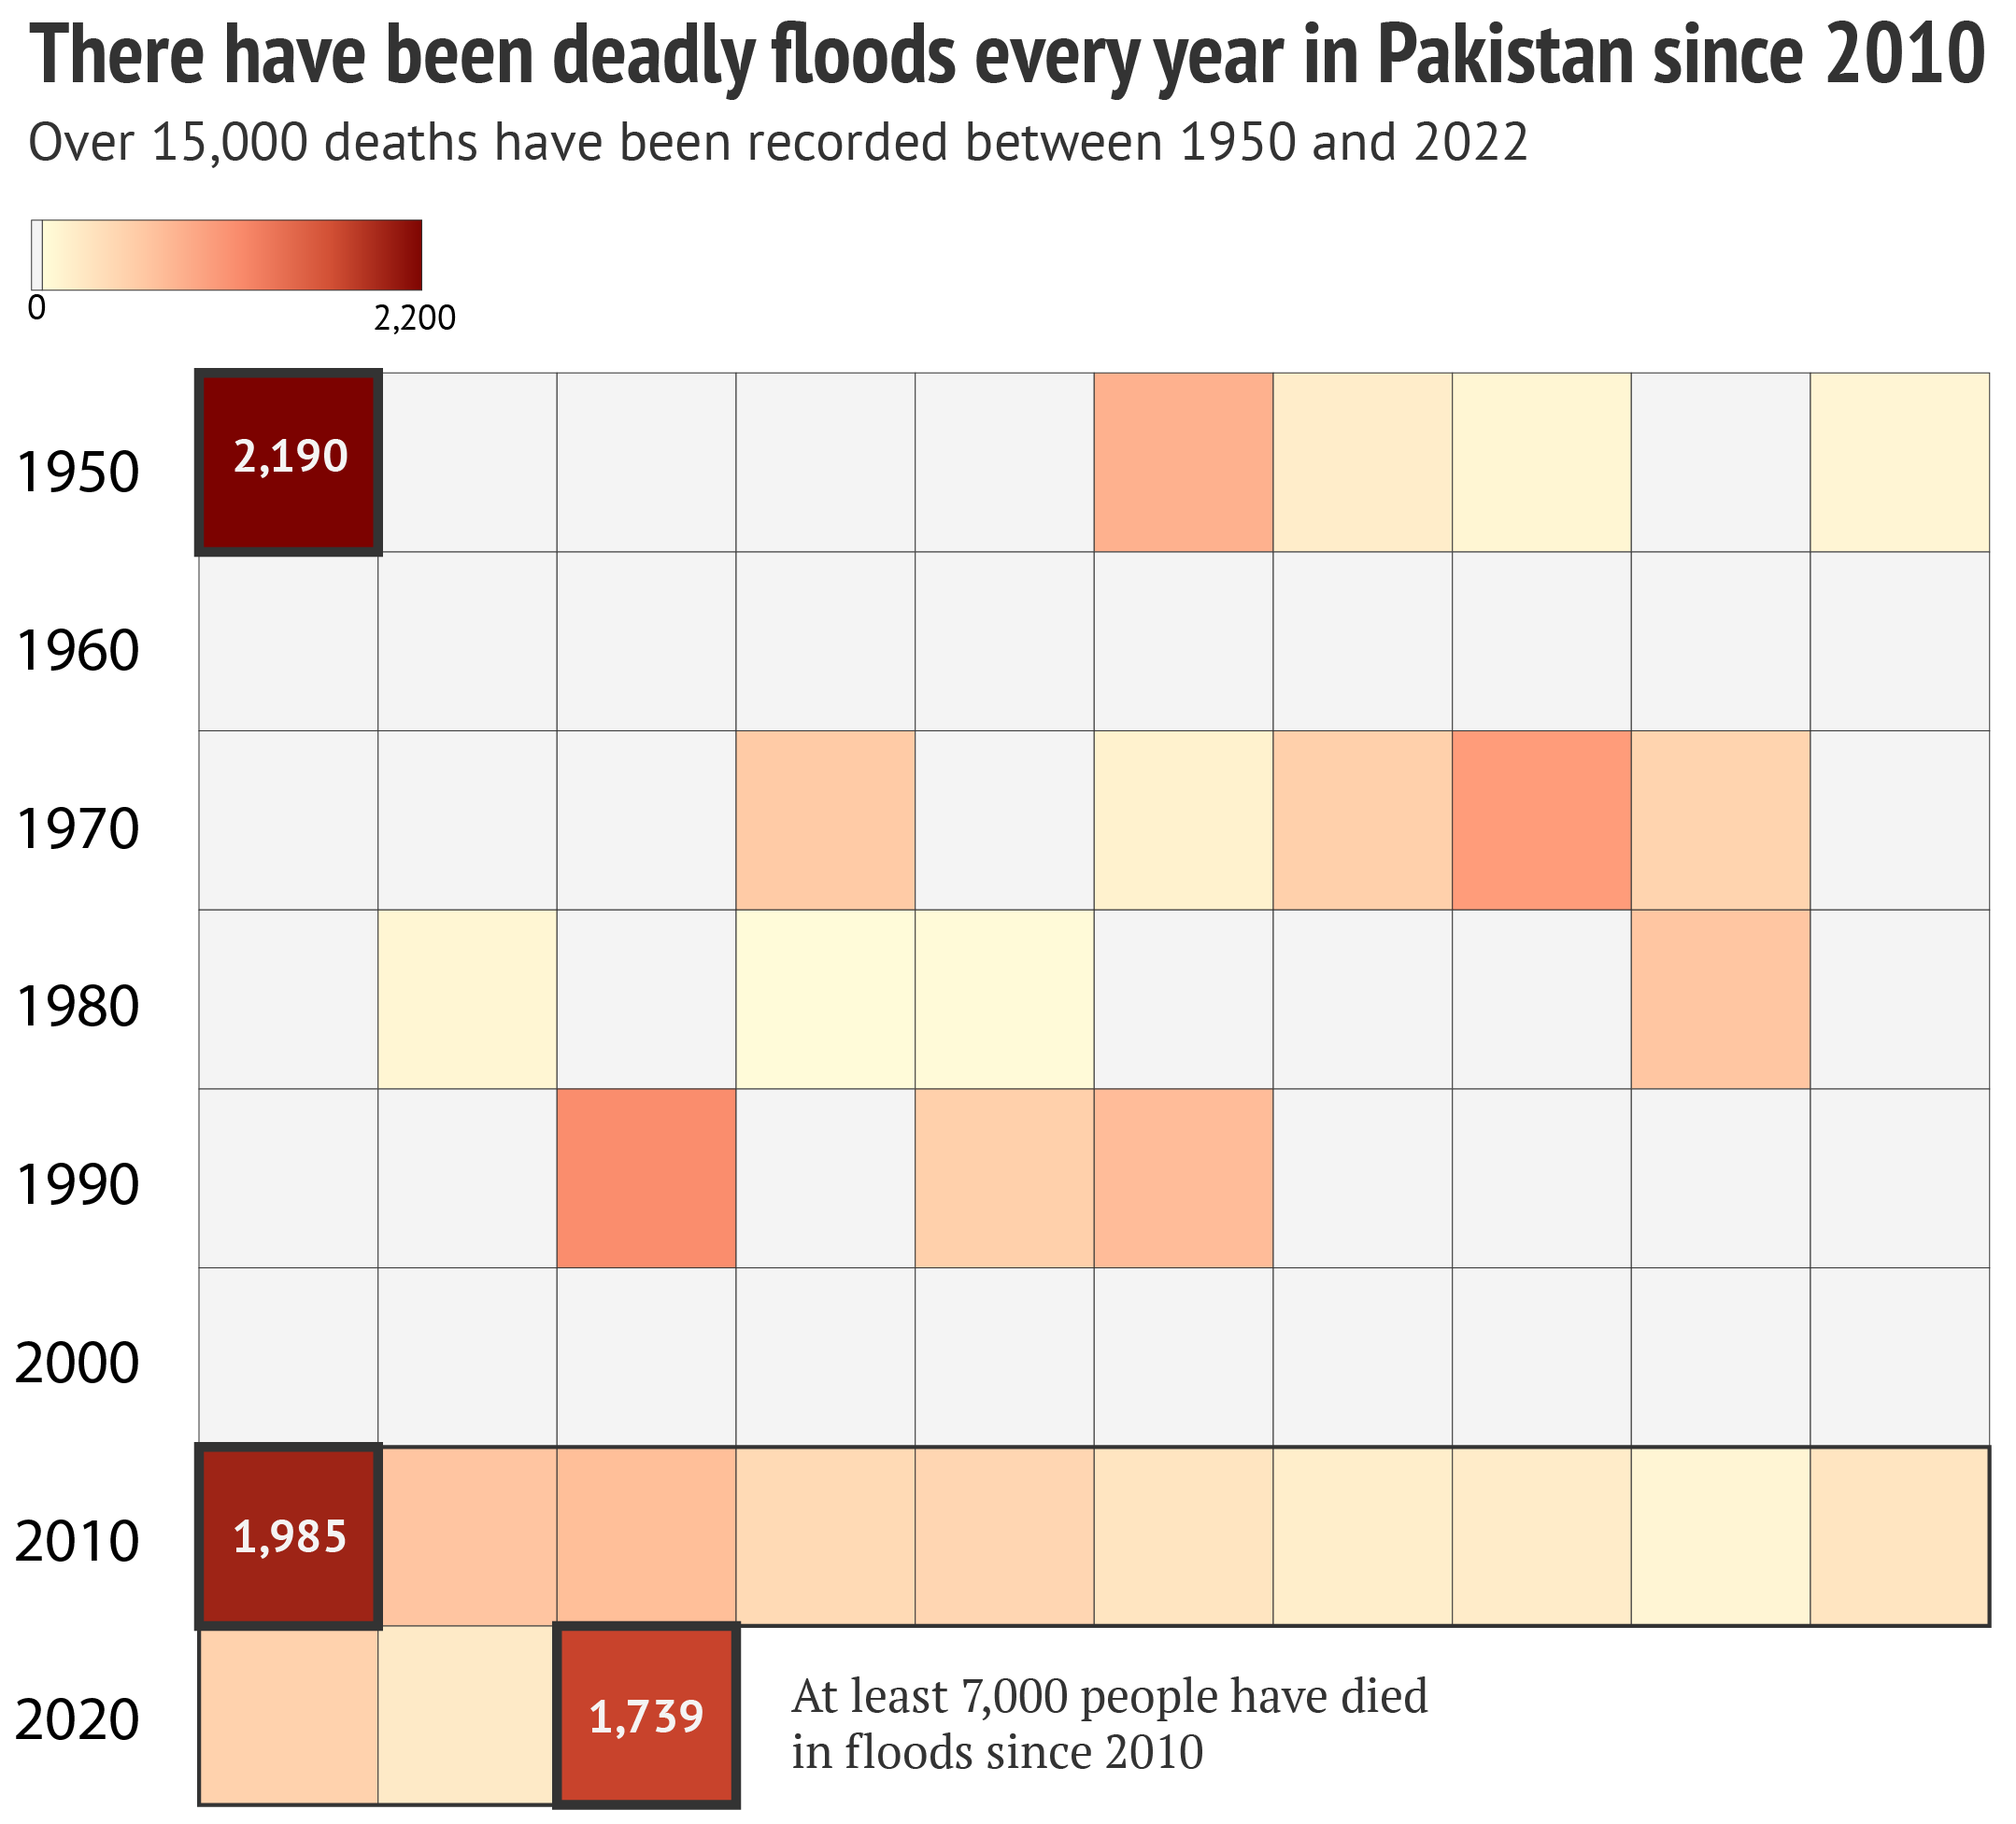 Grafico che mostra che ci sono state inondazioni mortali ogni anno in Pakistan dal 2010.